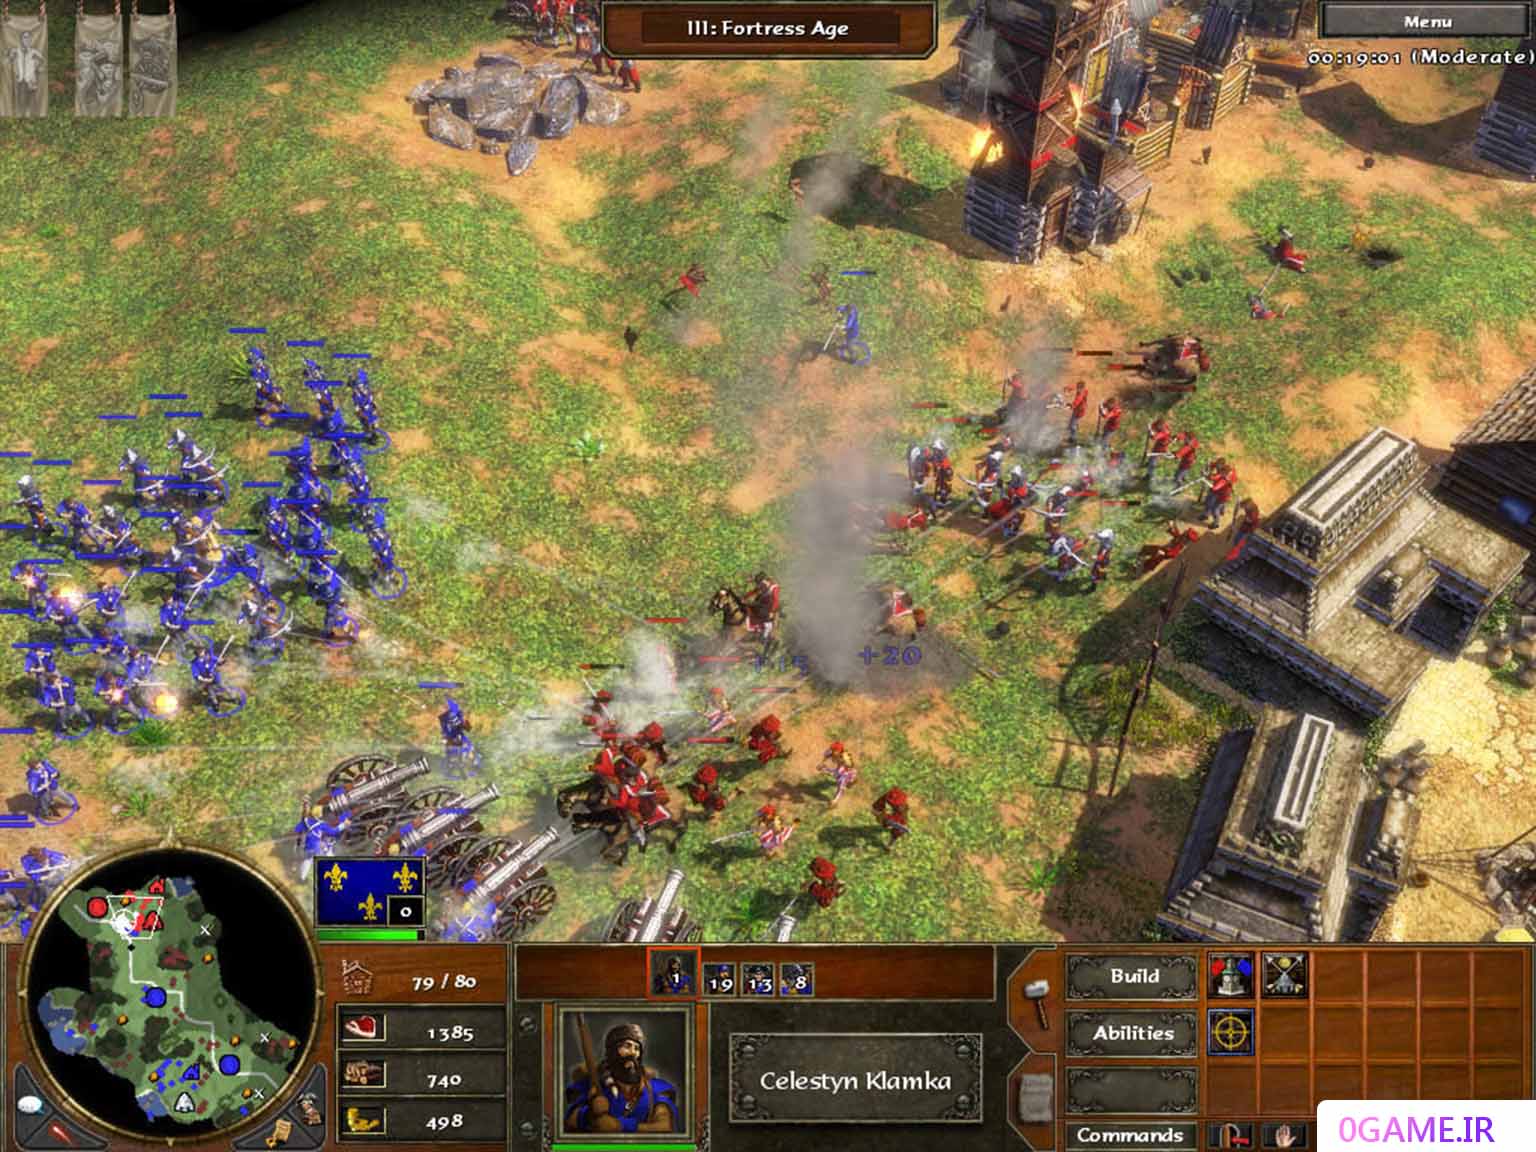 دانلود بازی عصر امپراطوری 3 (Age of Empires III) نسخه کامل برای کامپیوتر